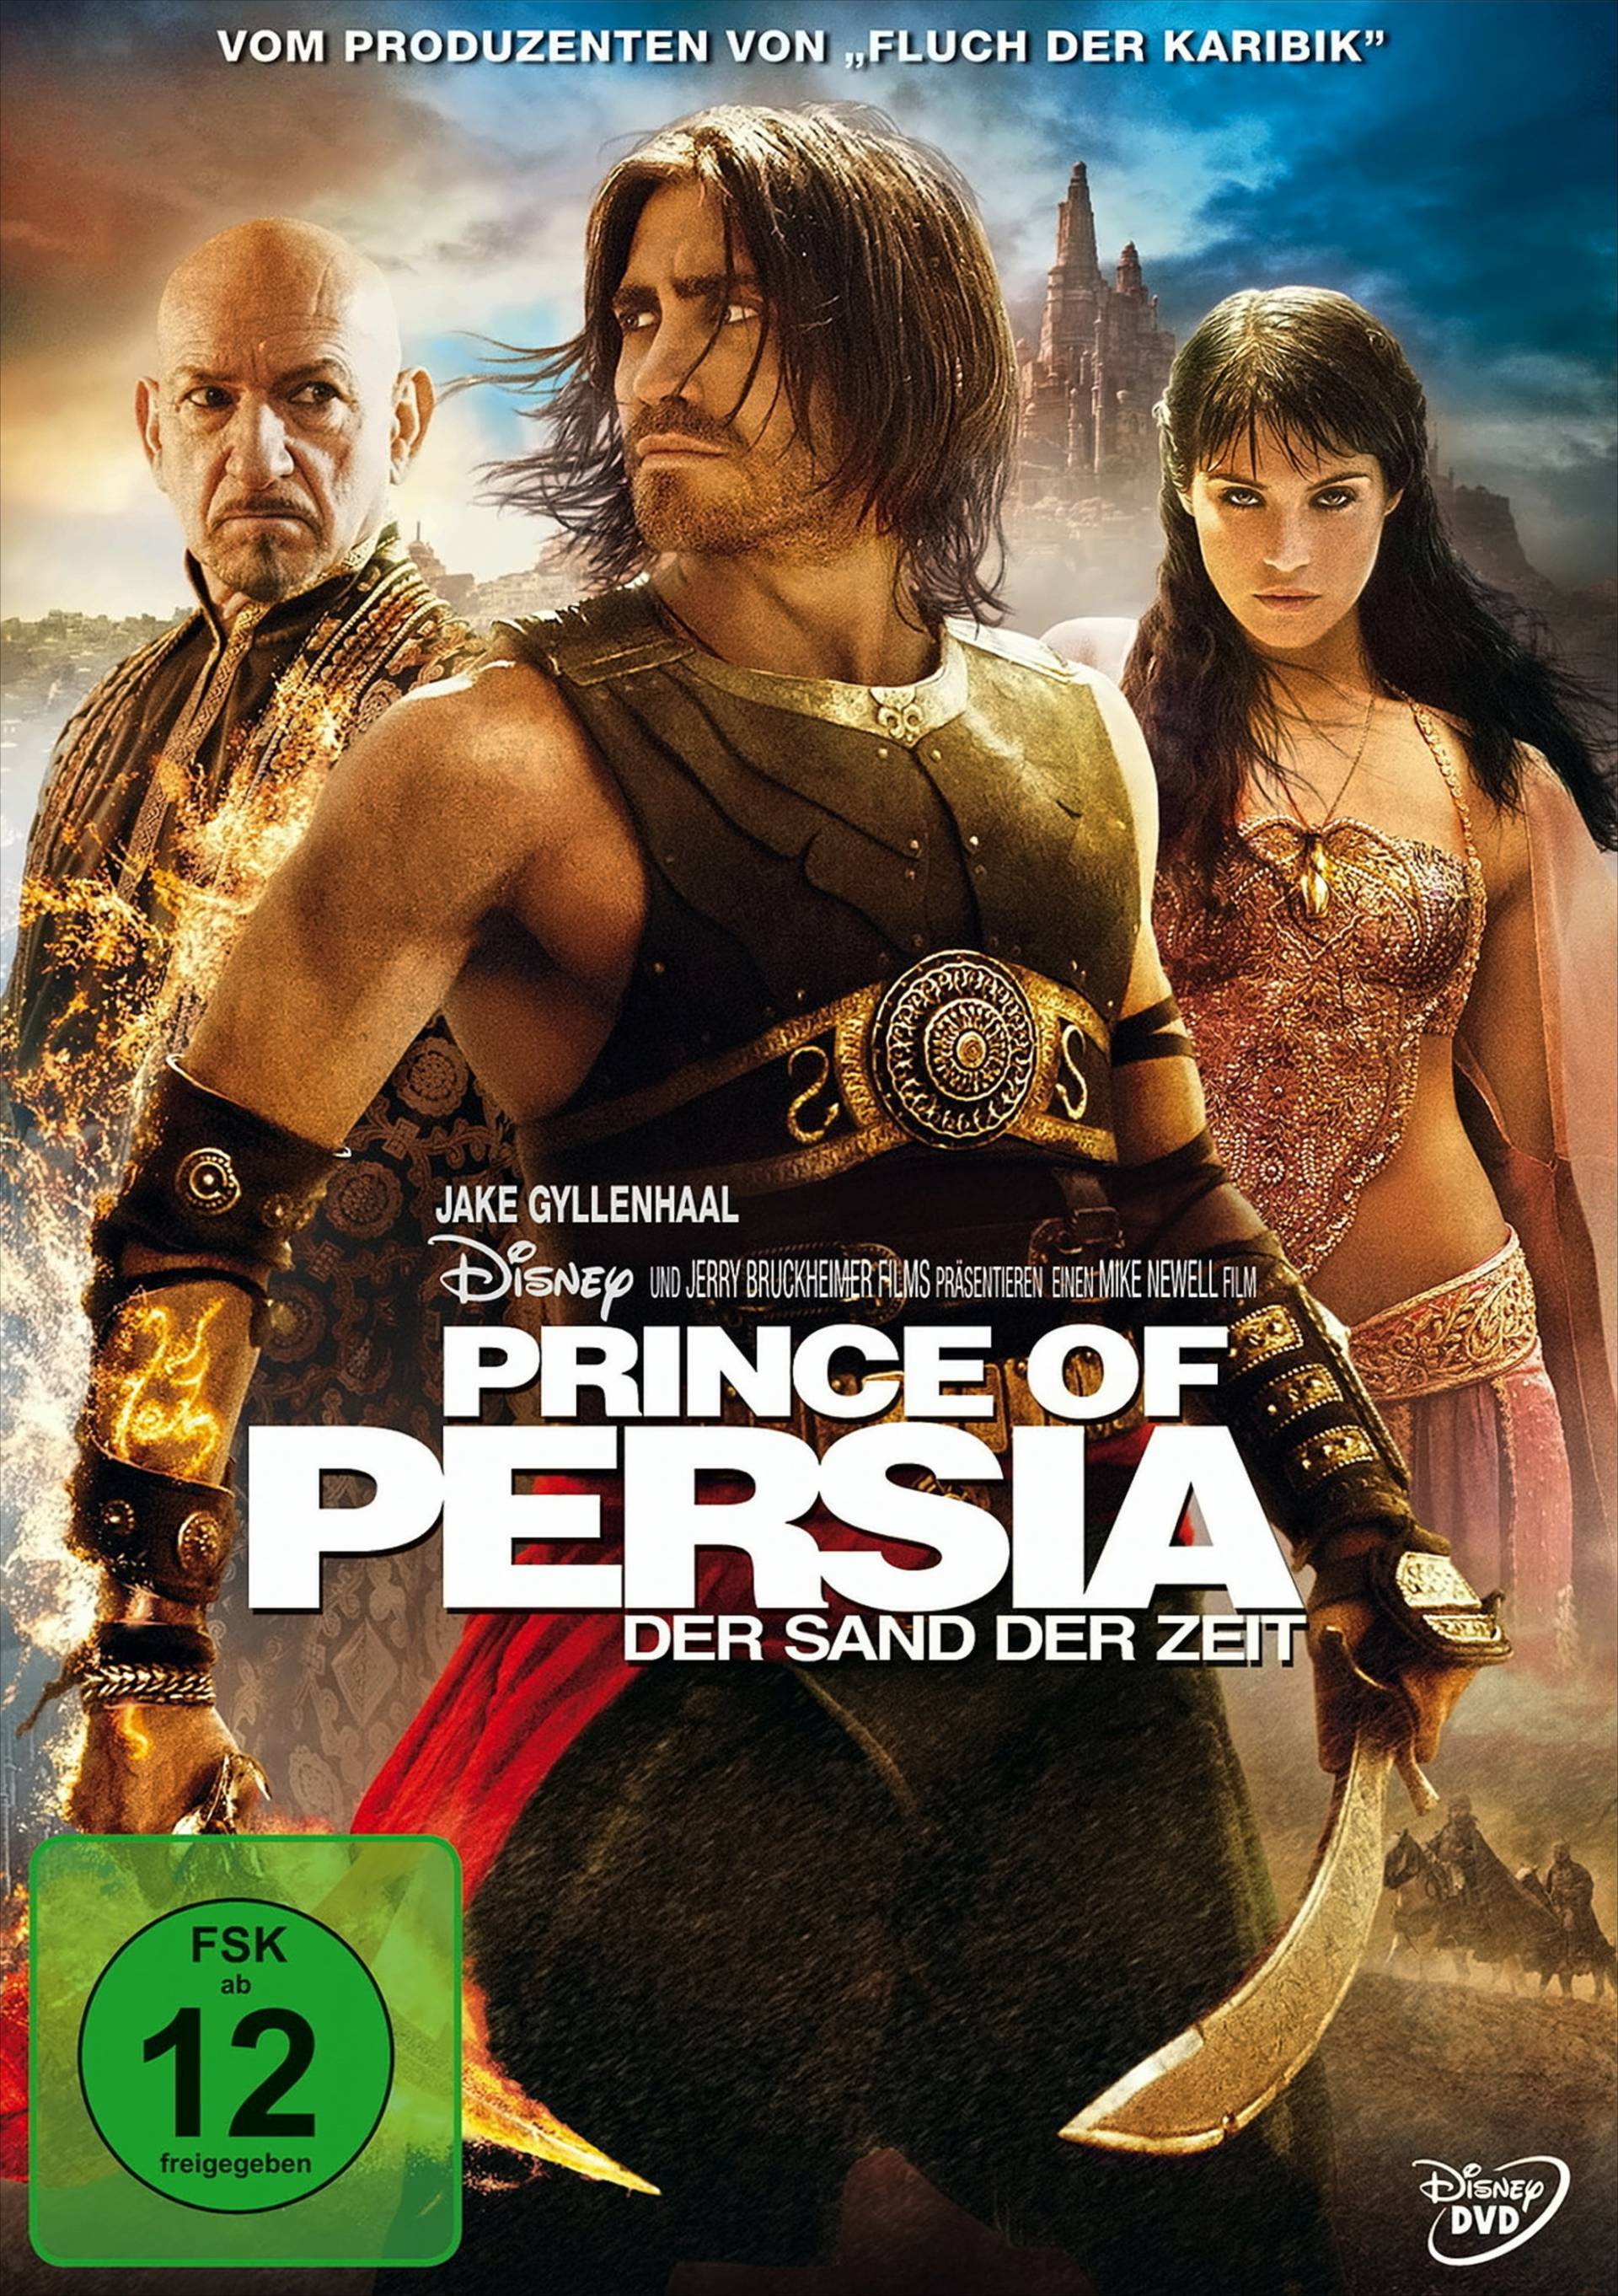 Prince of Persia - Der Sand der Zeit von Walt Disney Studios